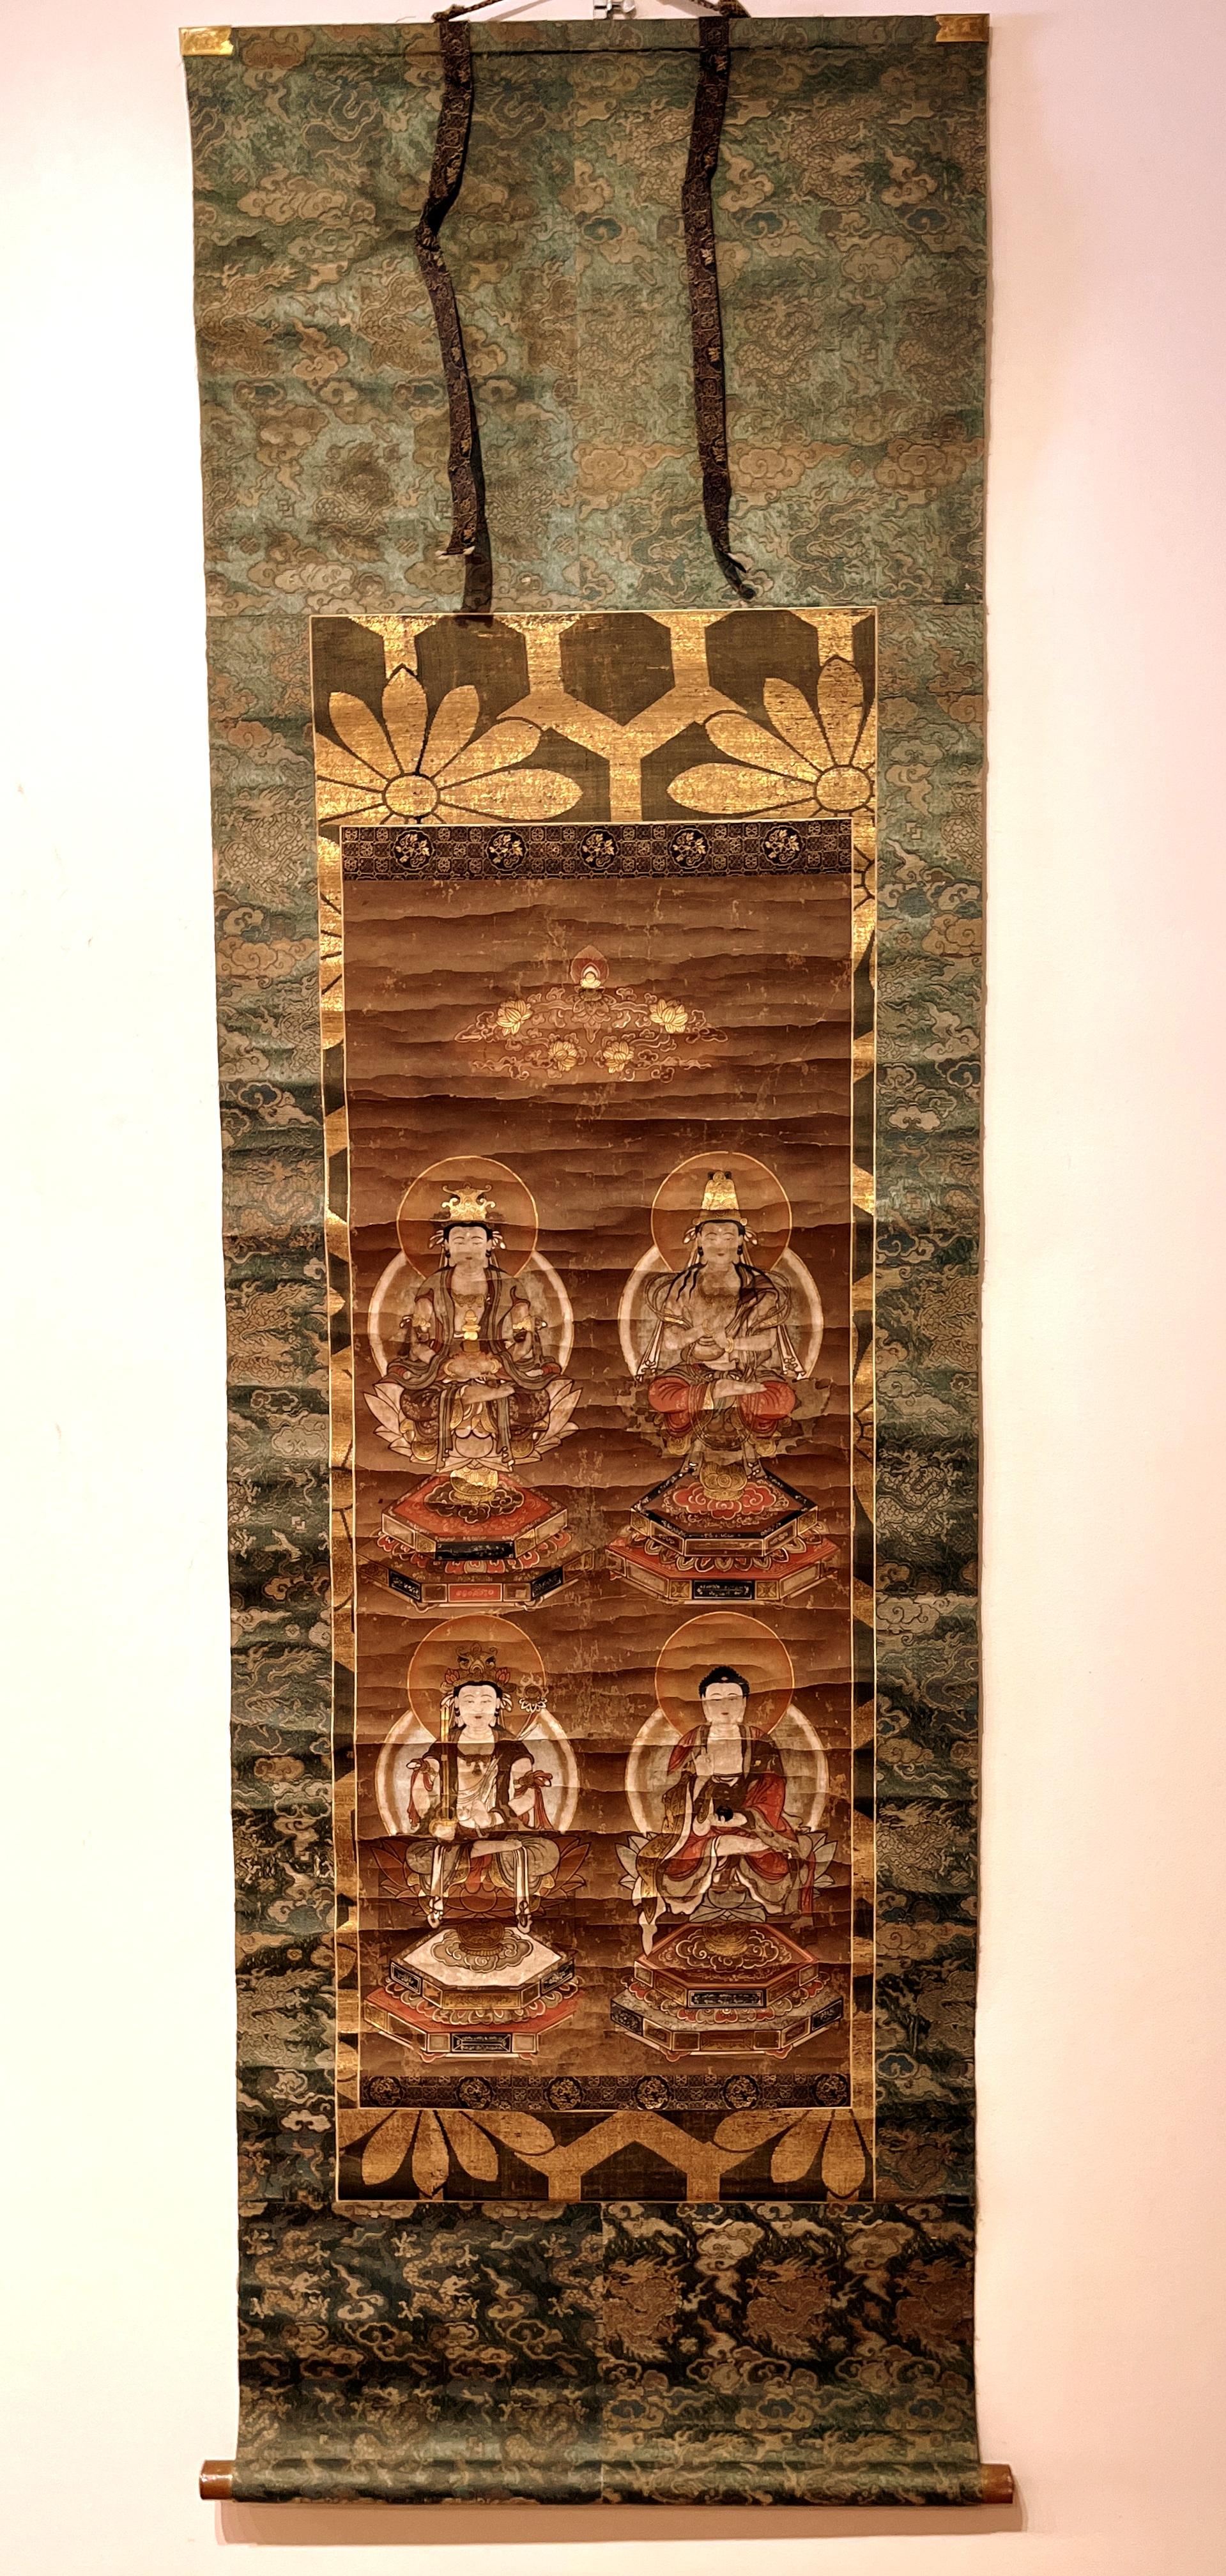 Japanische buddhistische Malerei, hängende Schriftrollenmalerei
Auf dem Gemälde sind Amituofo und Budhisattva dargestellt, die auf den Sitzen der Lotuskrone sitzen. Schöne und fein außen montierte Brokate. 
Gesamtgröße:  70